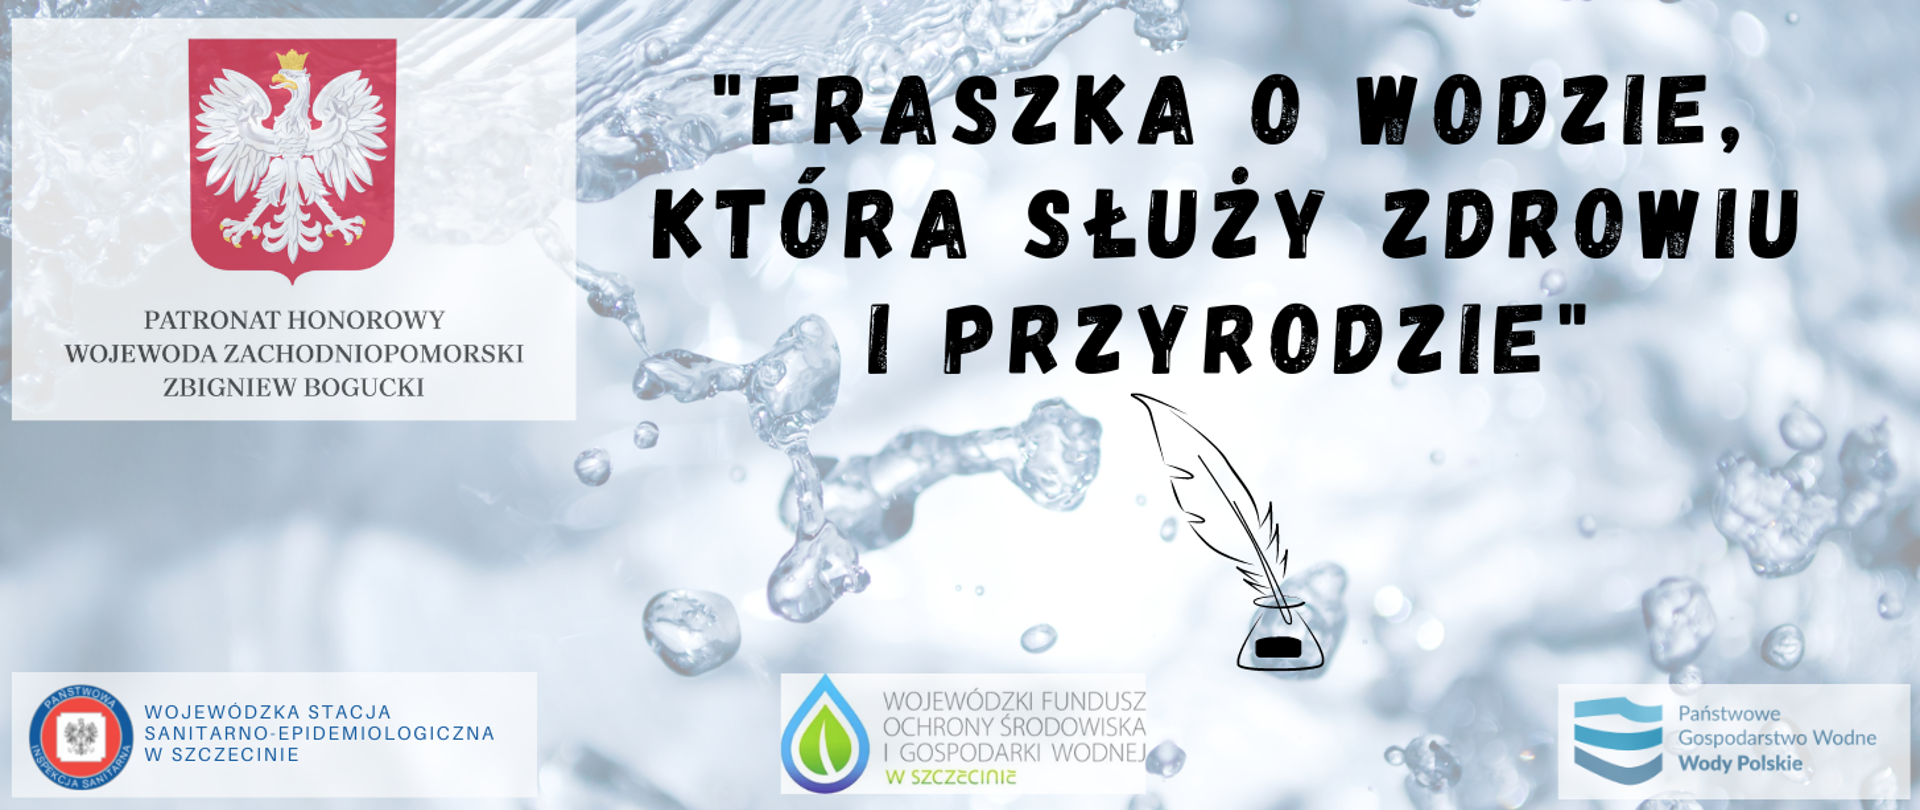 Grafika zawiera tytuł oraz patronów konkursu pod nazwą "Fraszka o wodzie, która służy zdrowiu i przyrodzie"